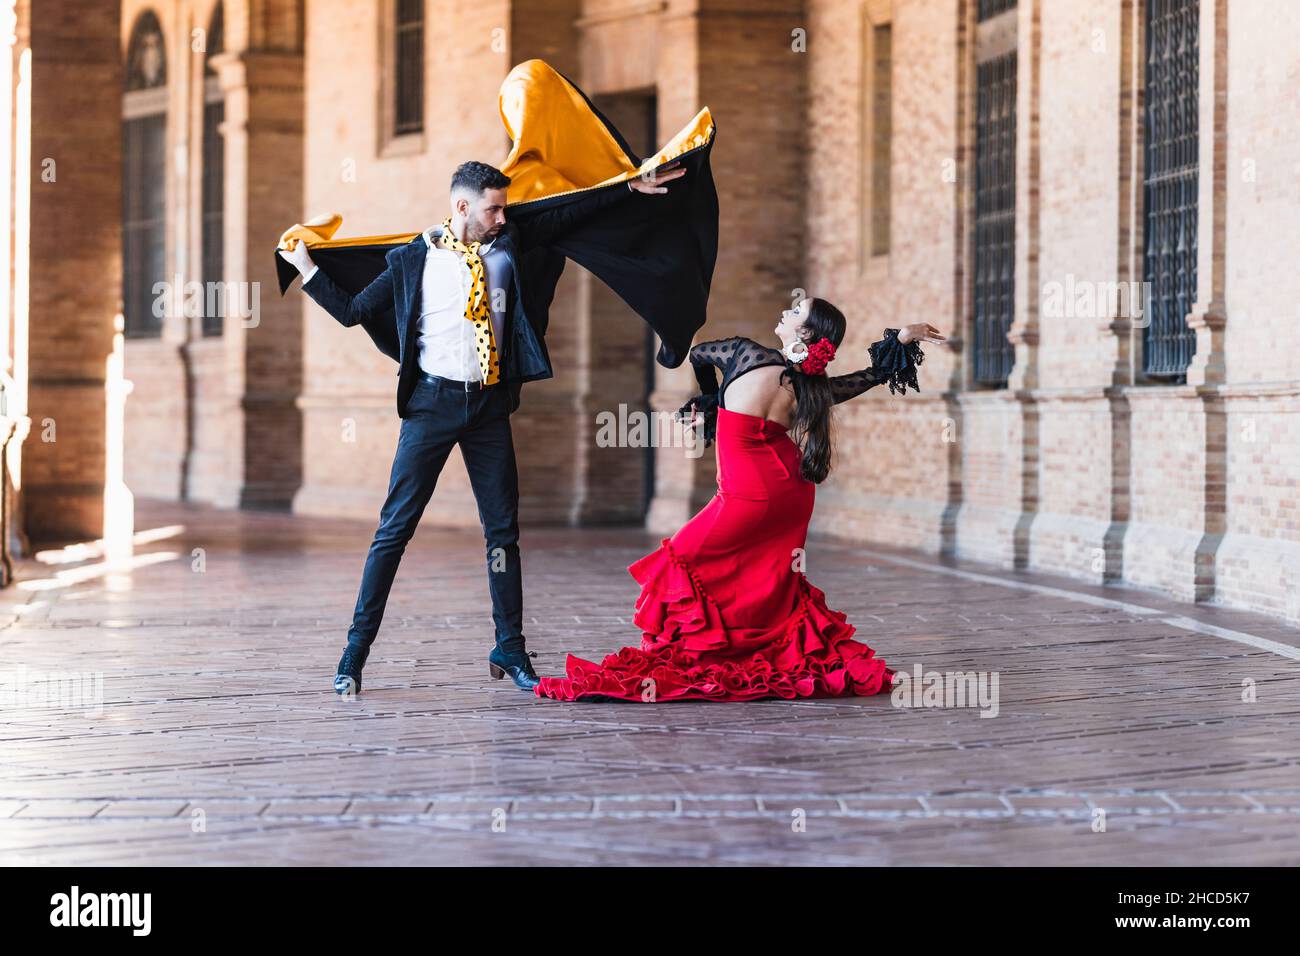 EL FLAMENCO, UNA TRADICIÓN ESPAÑOLA Hombre-y-mujer-con-traje-flamenco-bailando-al-aire-libre-2hcd5k7